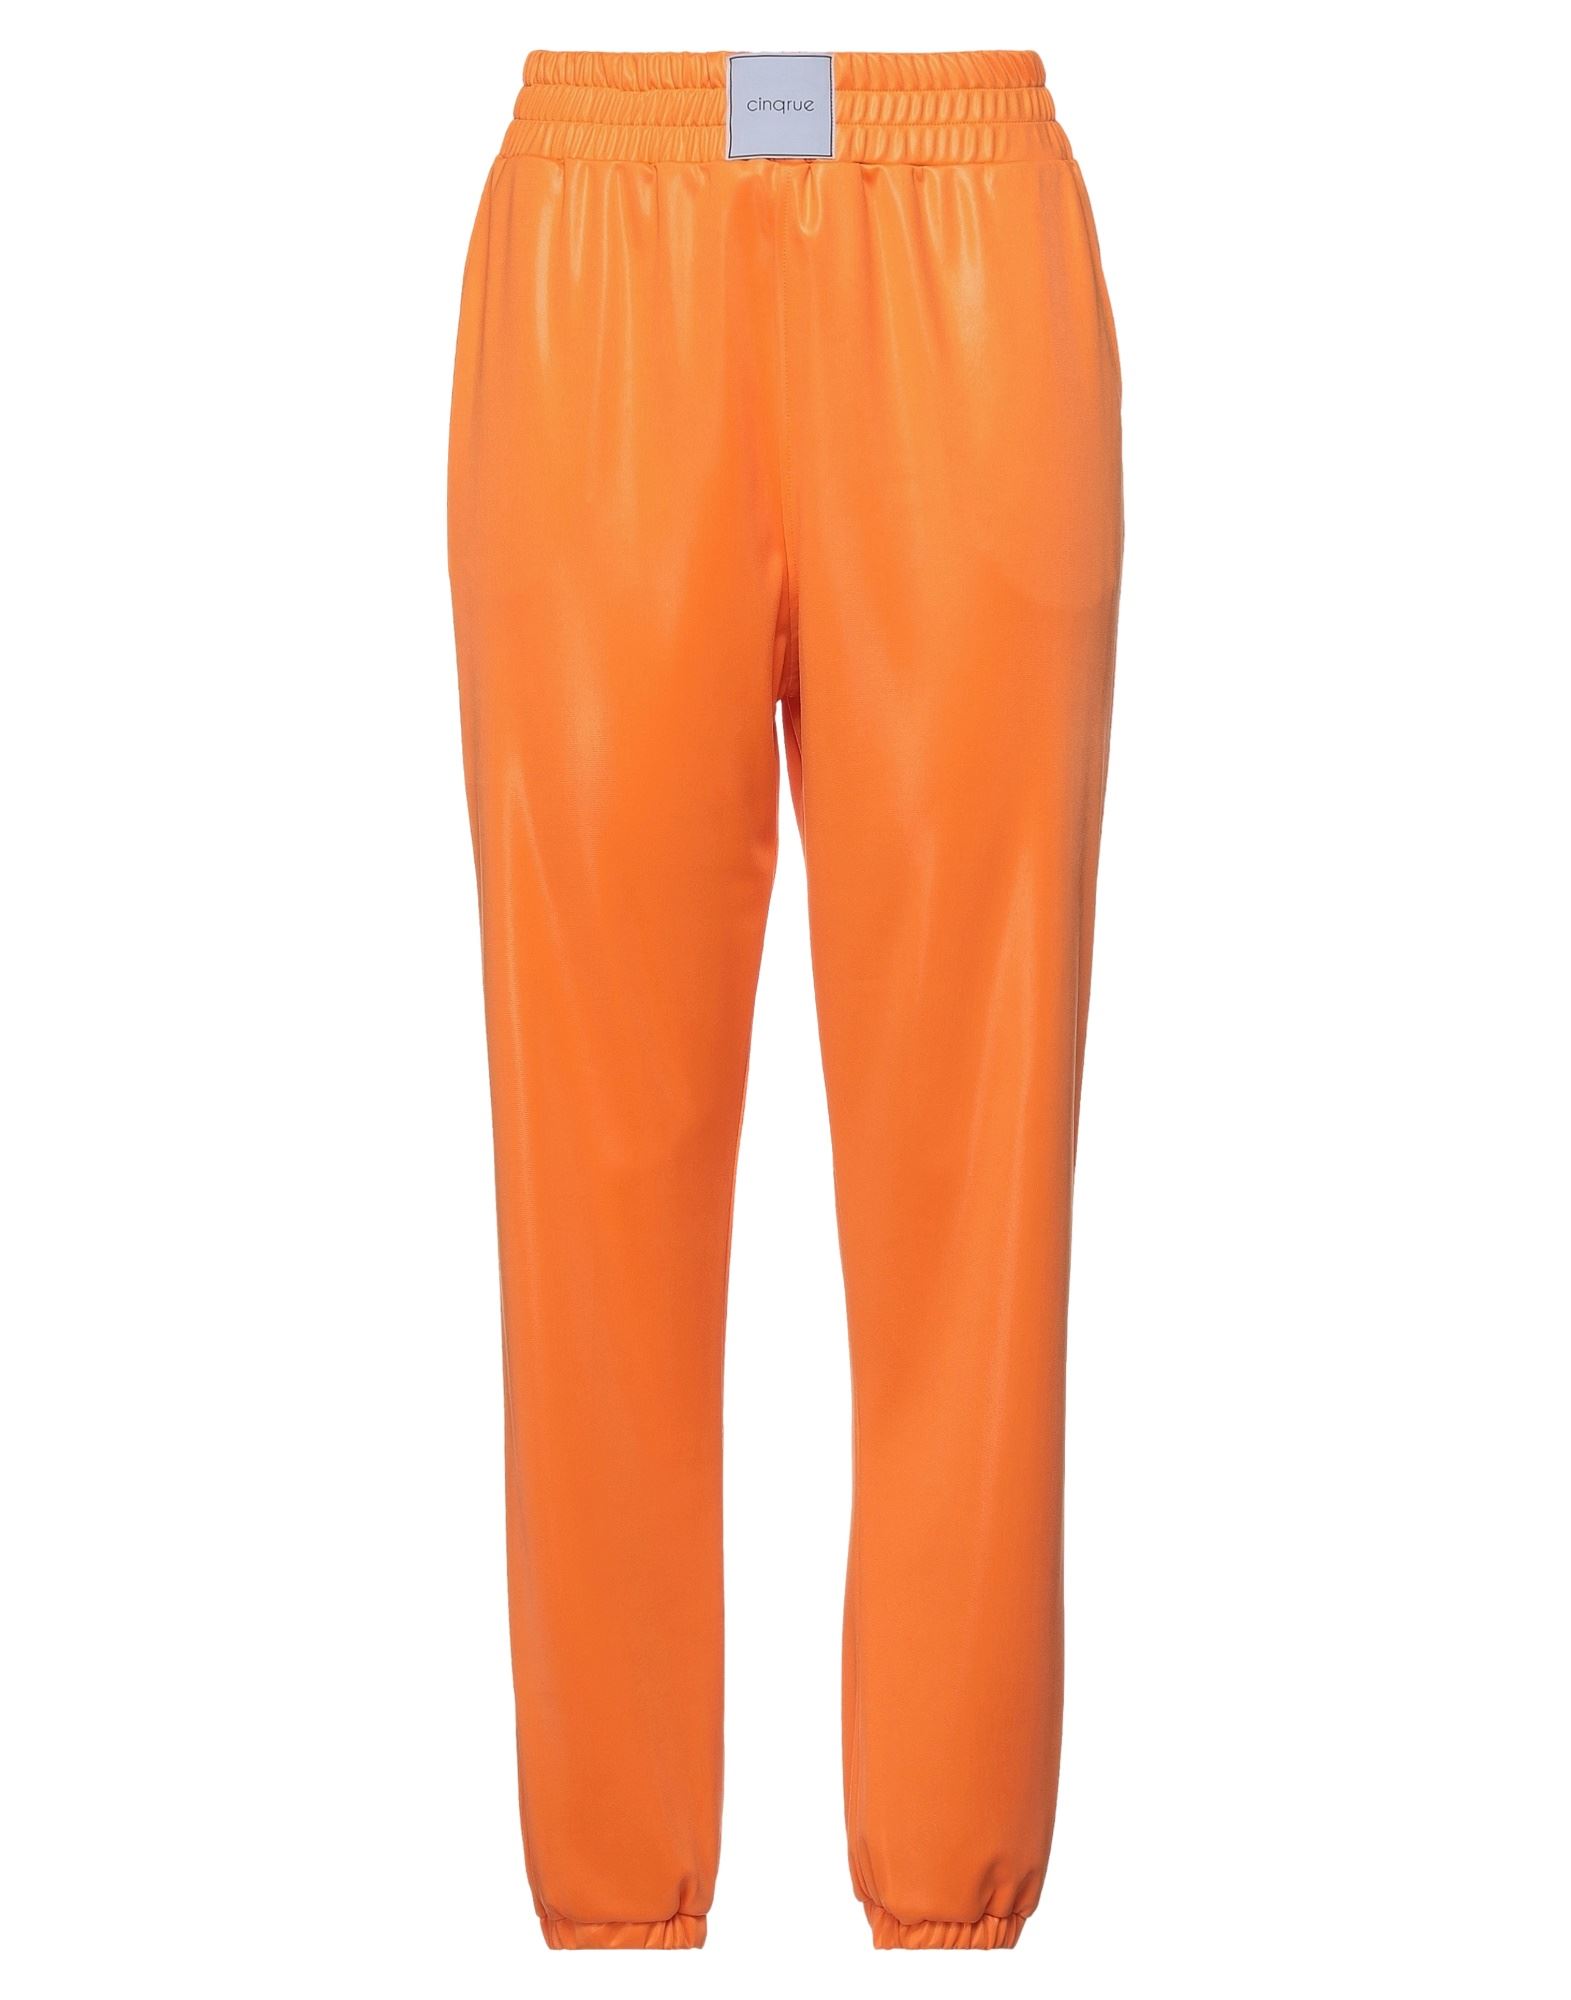 CINQRUE Hose Damen Orange von CINQRUE